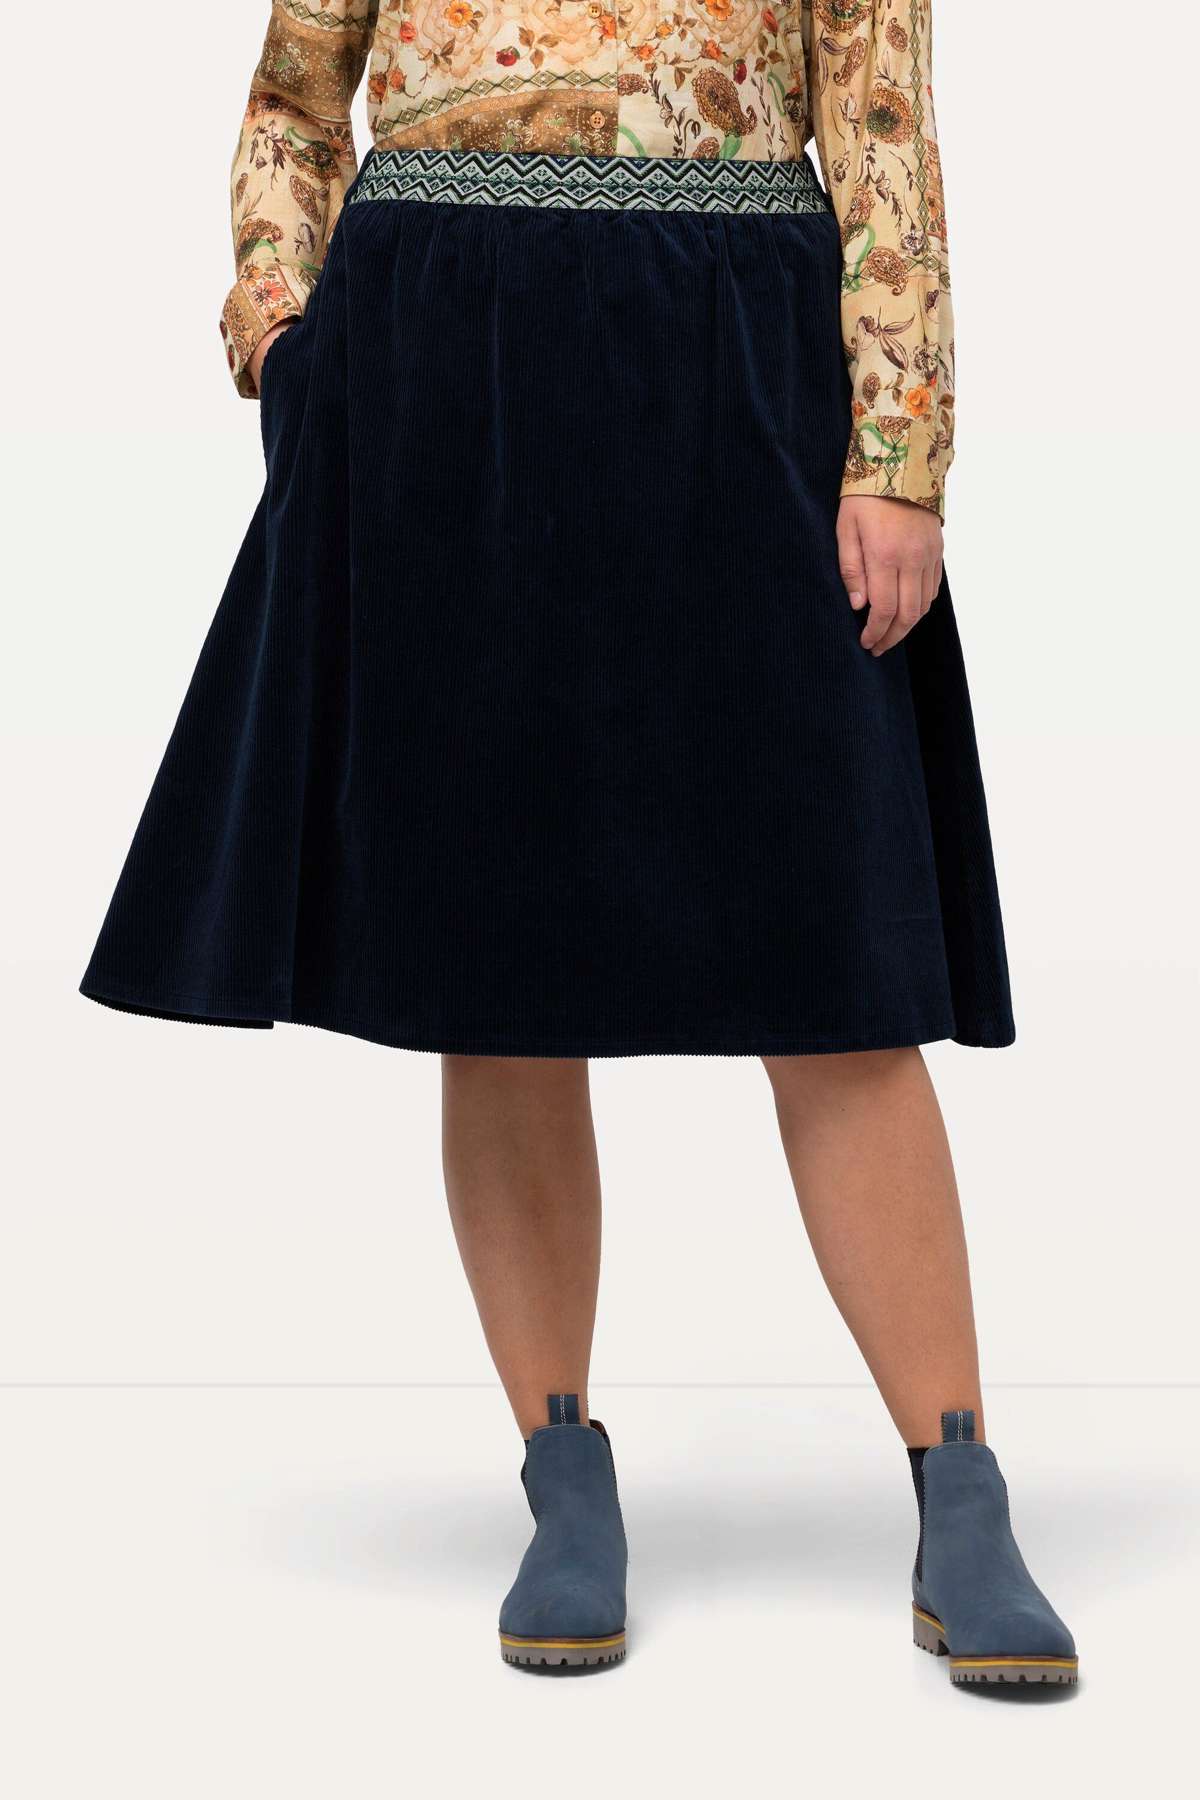 Кожаная юбка вельветовая юбка А-силуэта с декоративным эластичным поясом